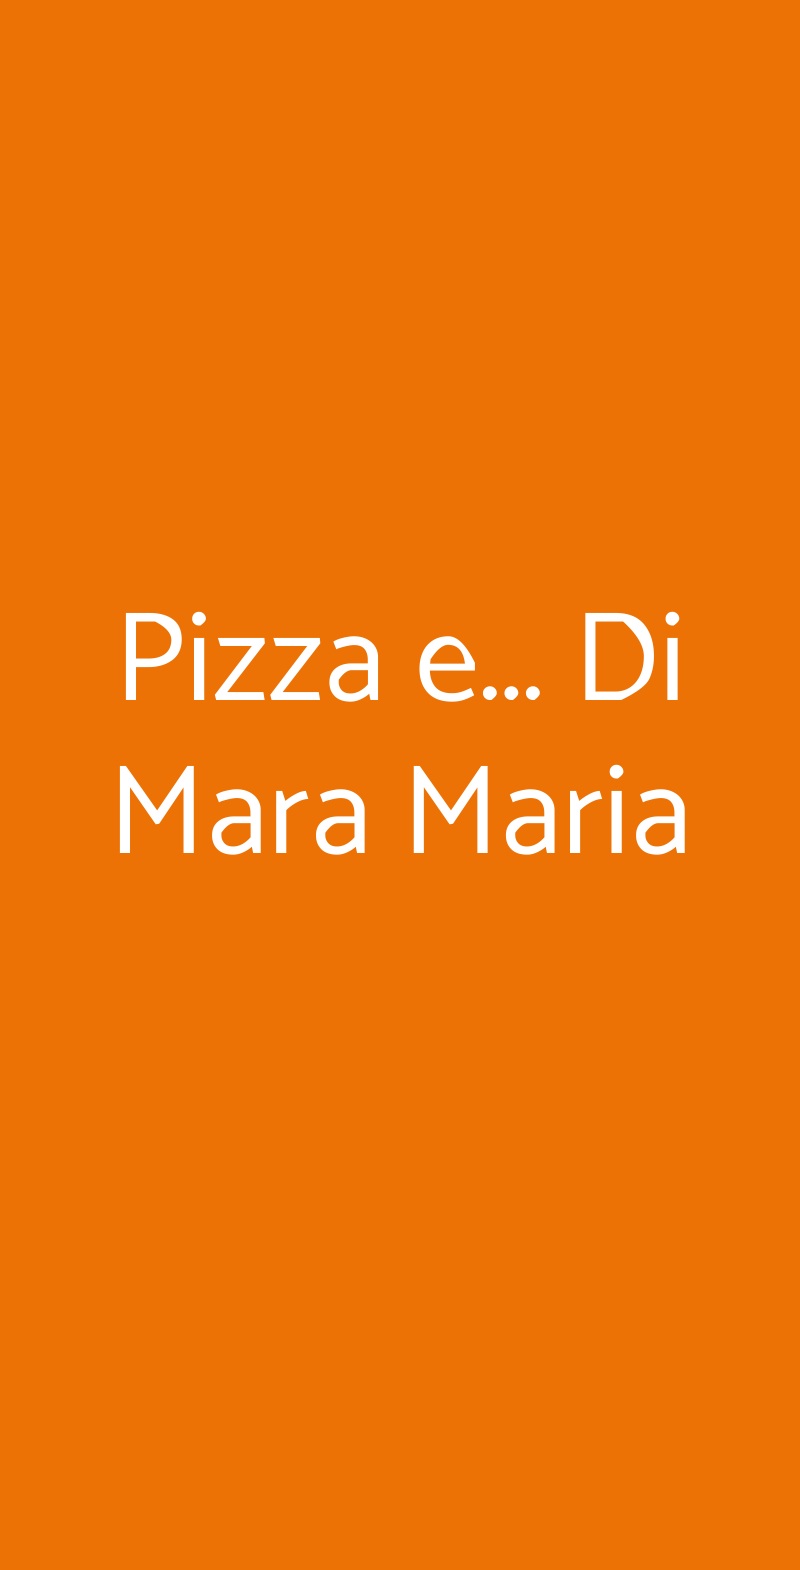 Pizza e... Di Mara Maria Roma menù 1 pagina